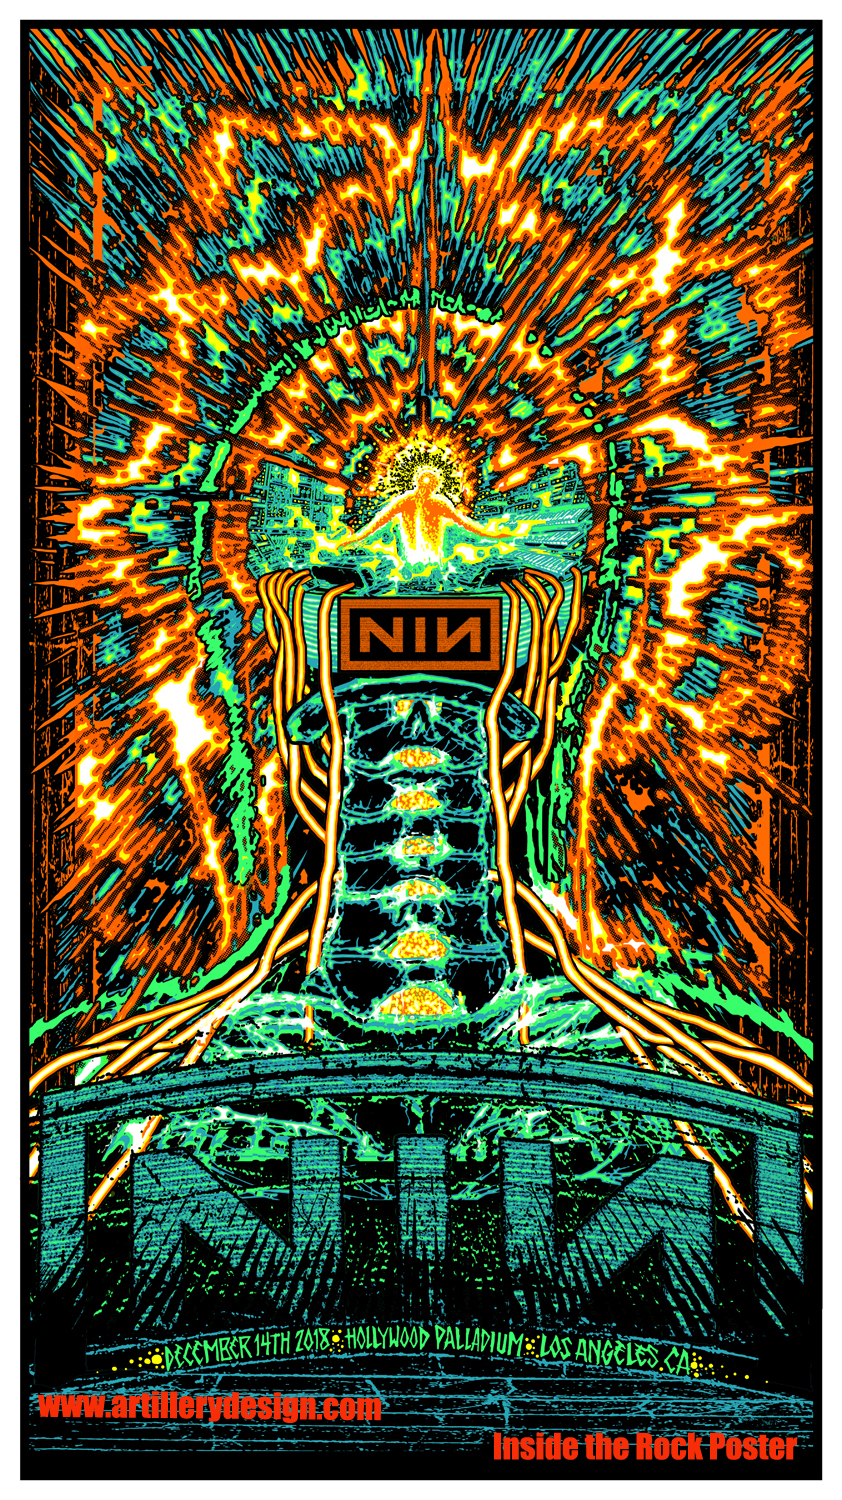 INSIDE THE ROCK POSTER FRAME BLOG Nine Inch Nails Los Angeles Poster